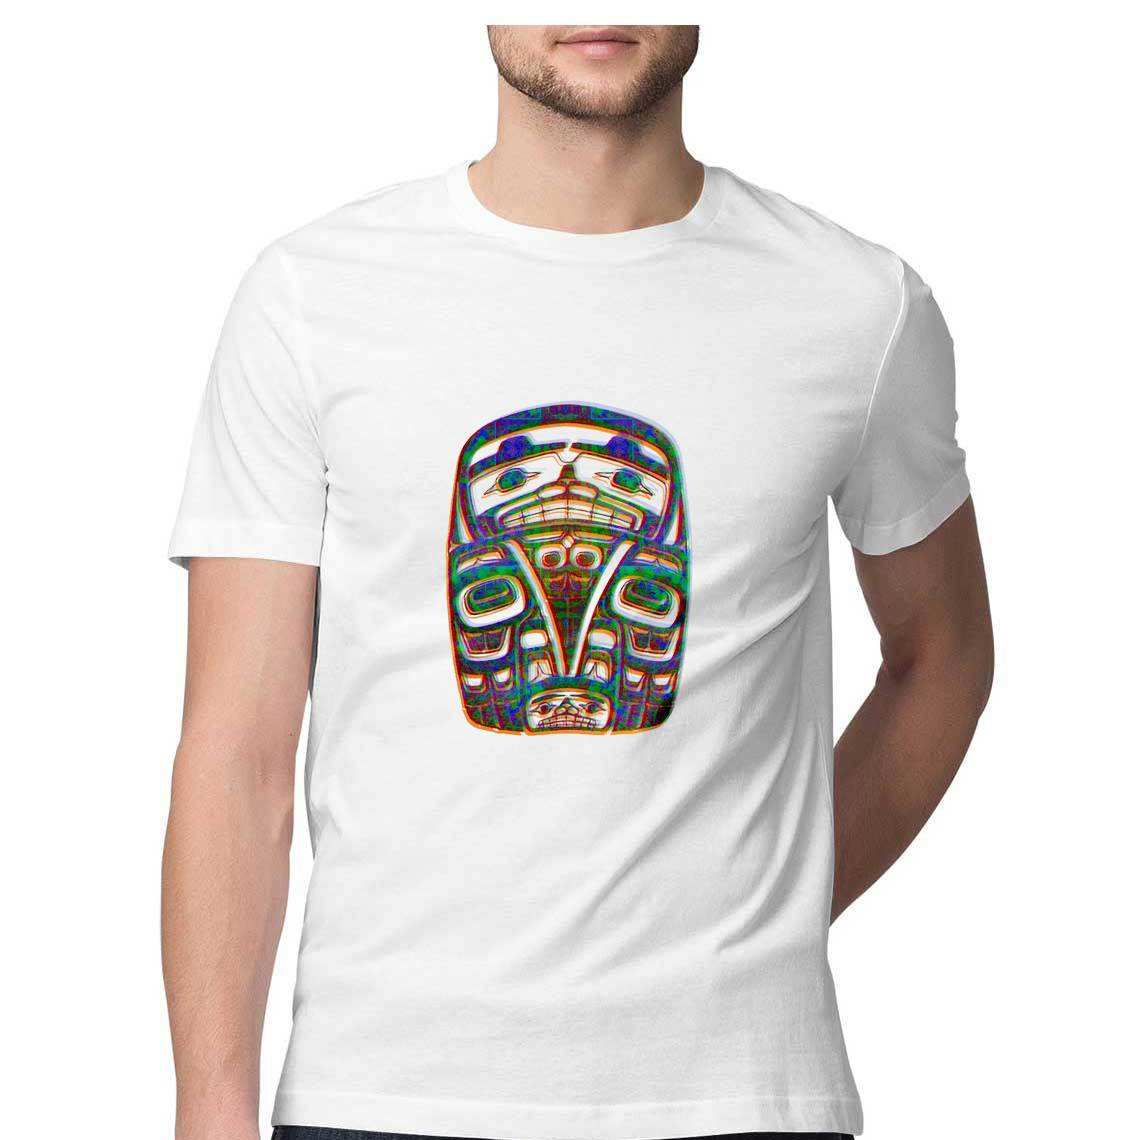 The Shaman's Totem Men's T-Shirt - CBD Store India